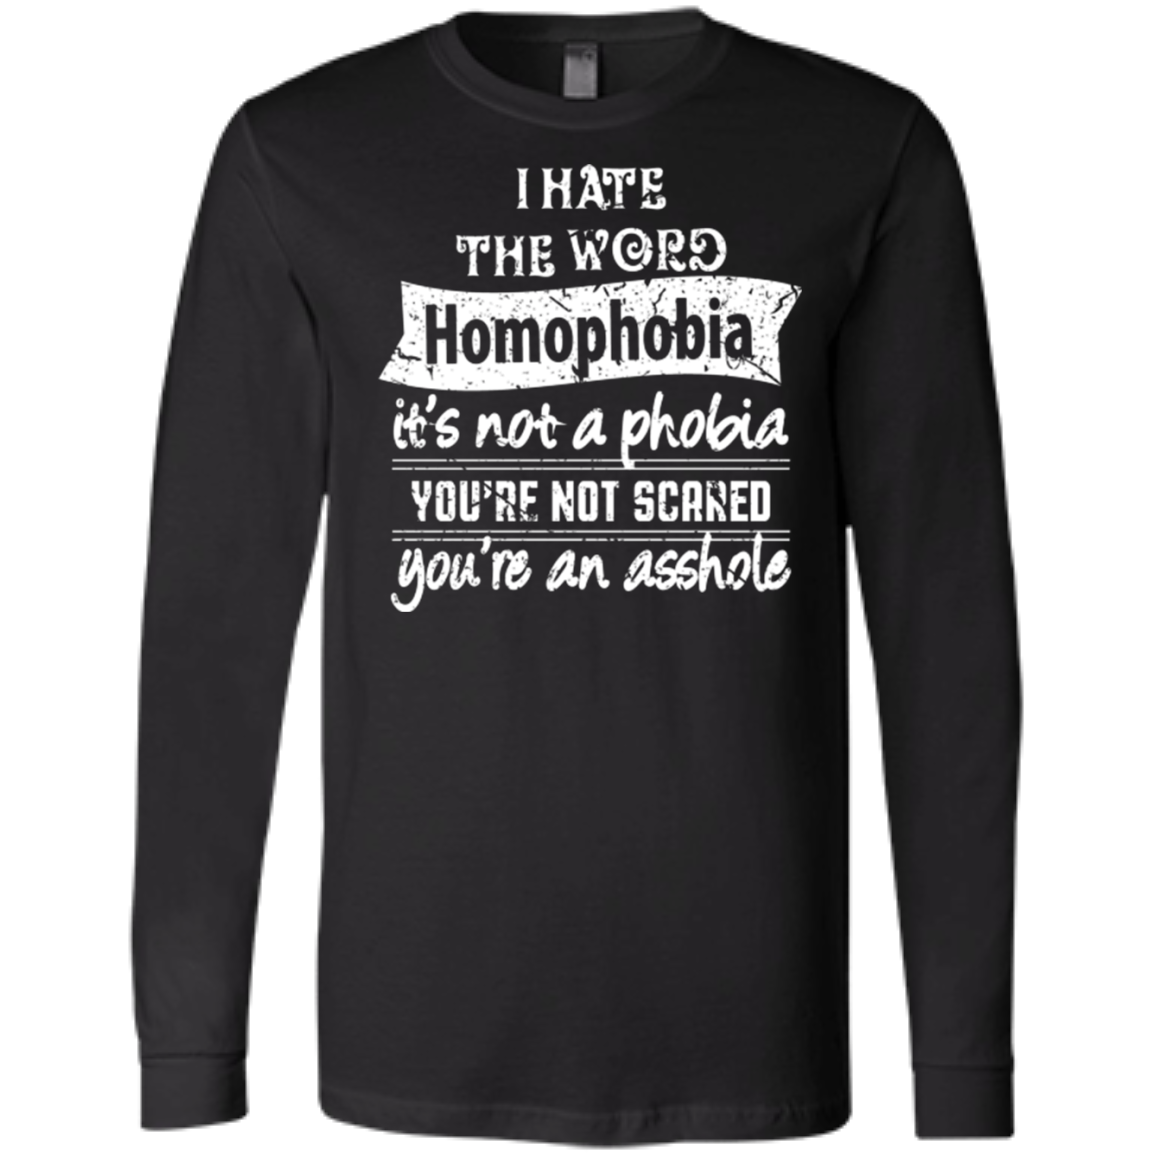 Anti Homophobia LGBT full sleeves black Shirt Gay pride ultra cotton tshirt for men